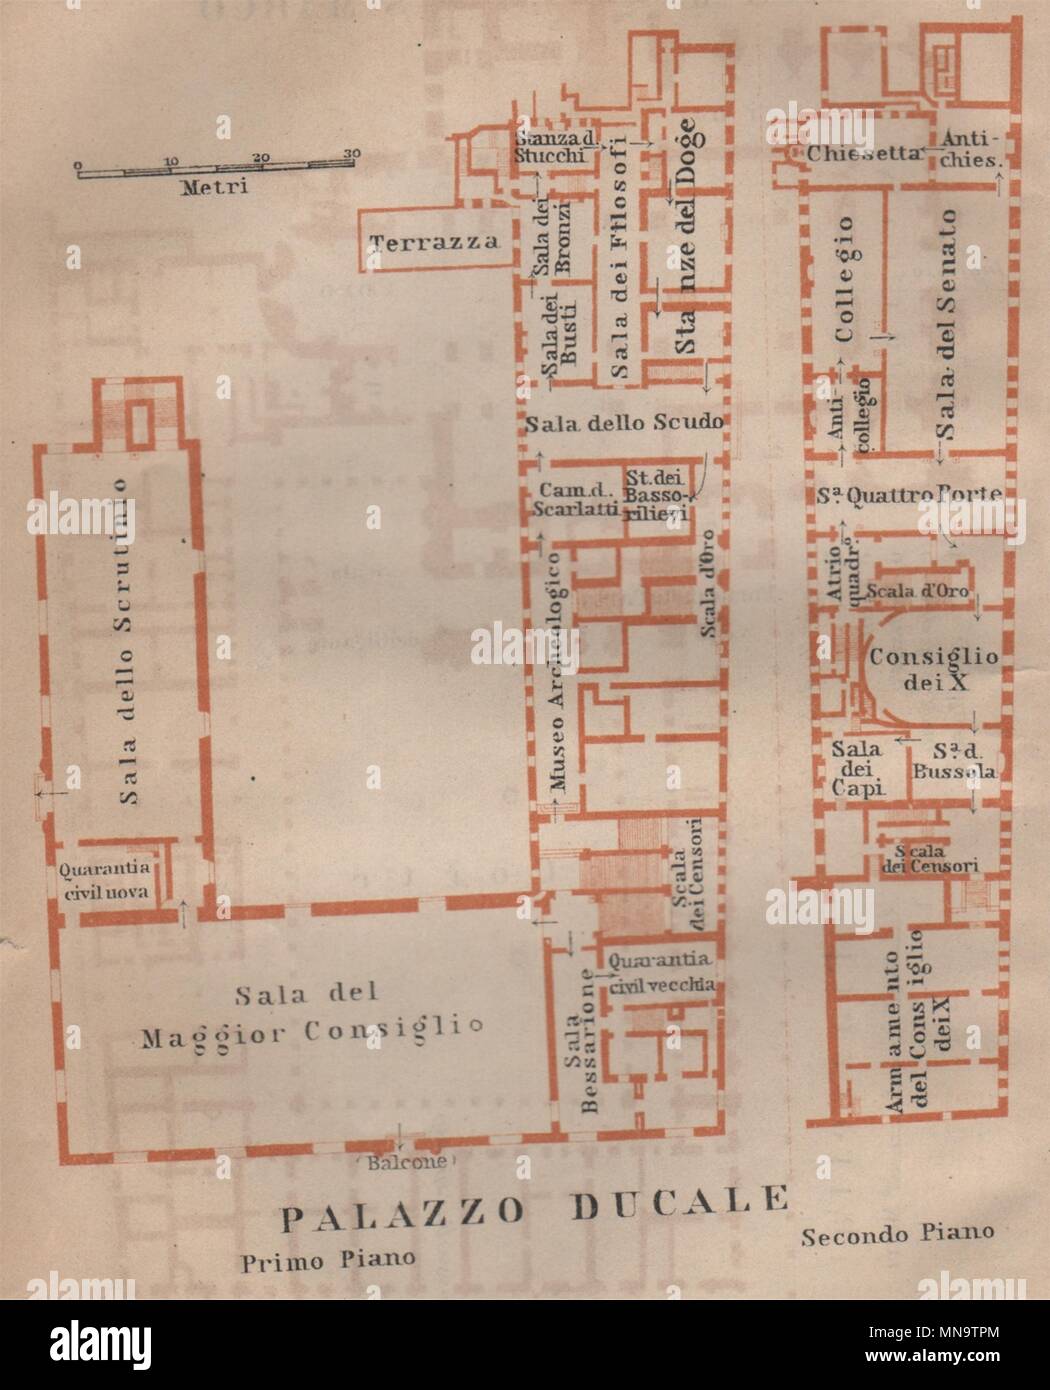 El Palazzo Ducale. Palacio Ducal, plano de planta. Venecia Venecia mappa. Pequeños 1906 Foto de stock